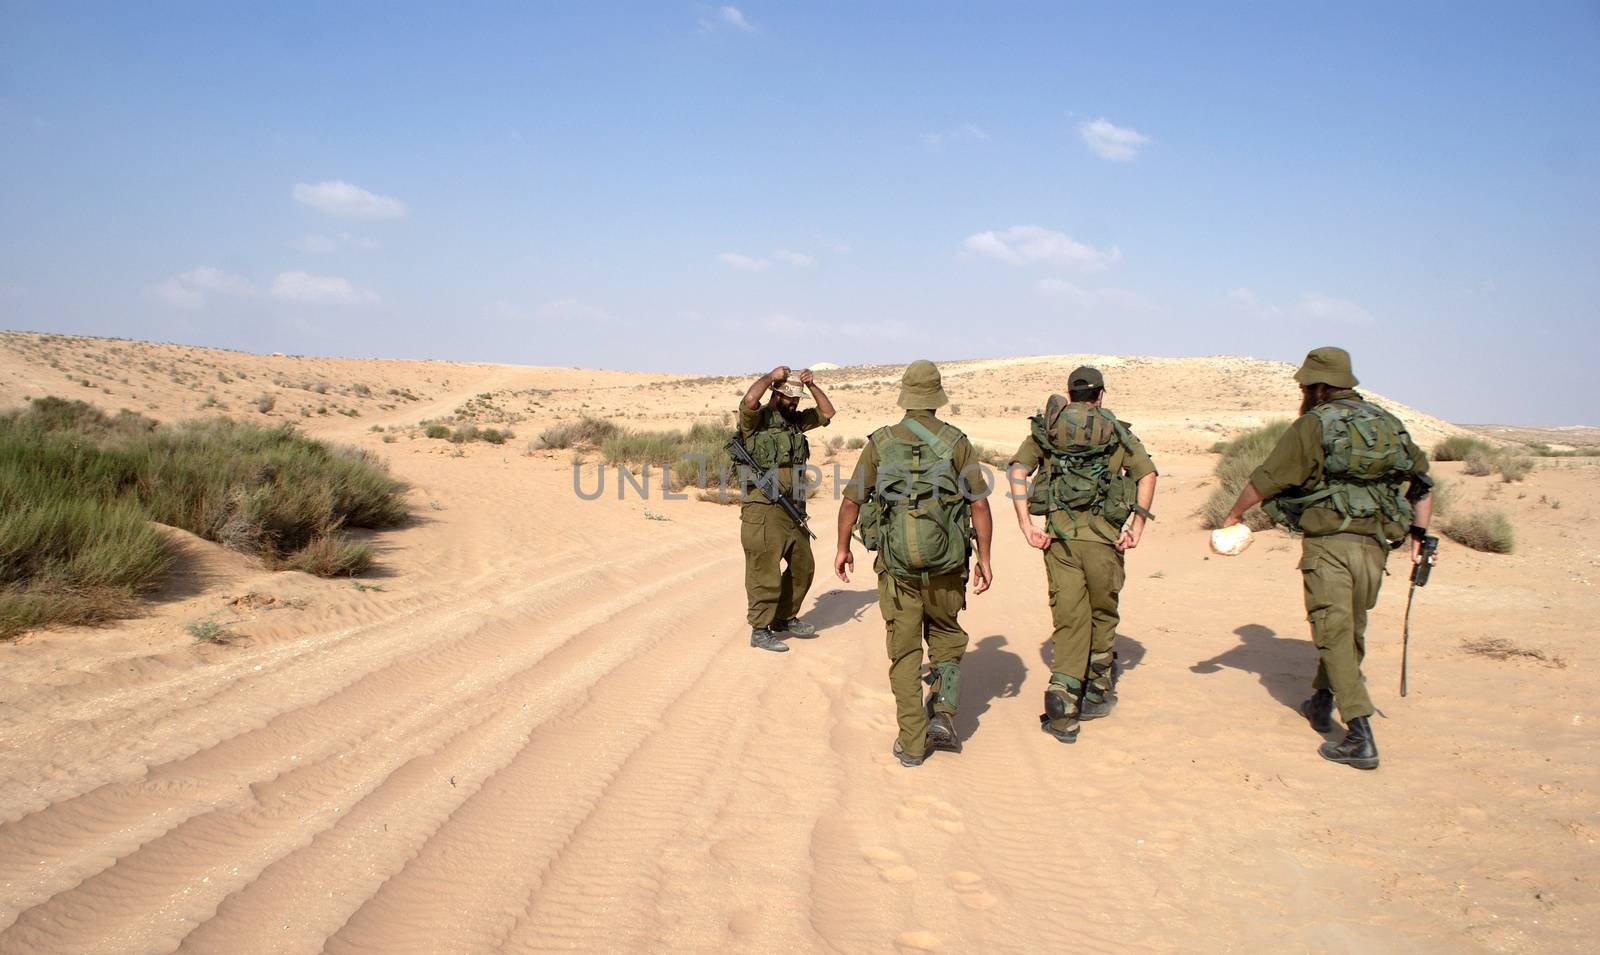 Israeli soldiers in Negev desert fighting terror